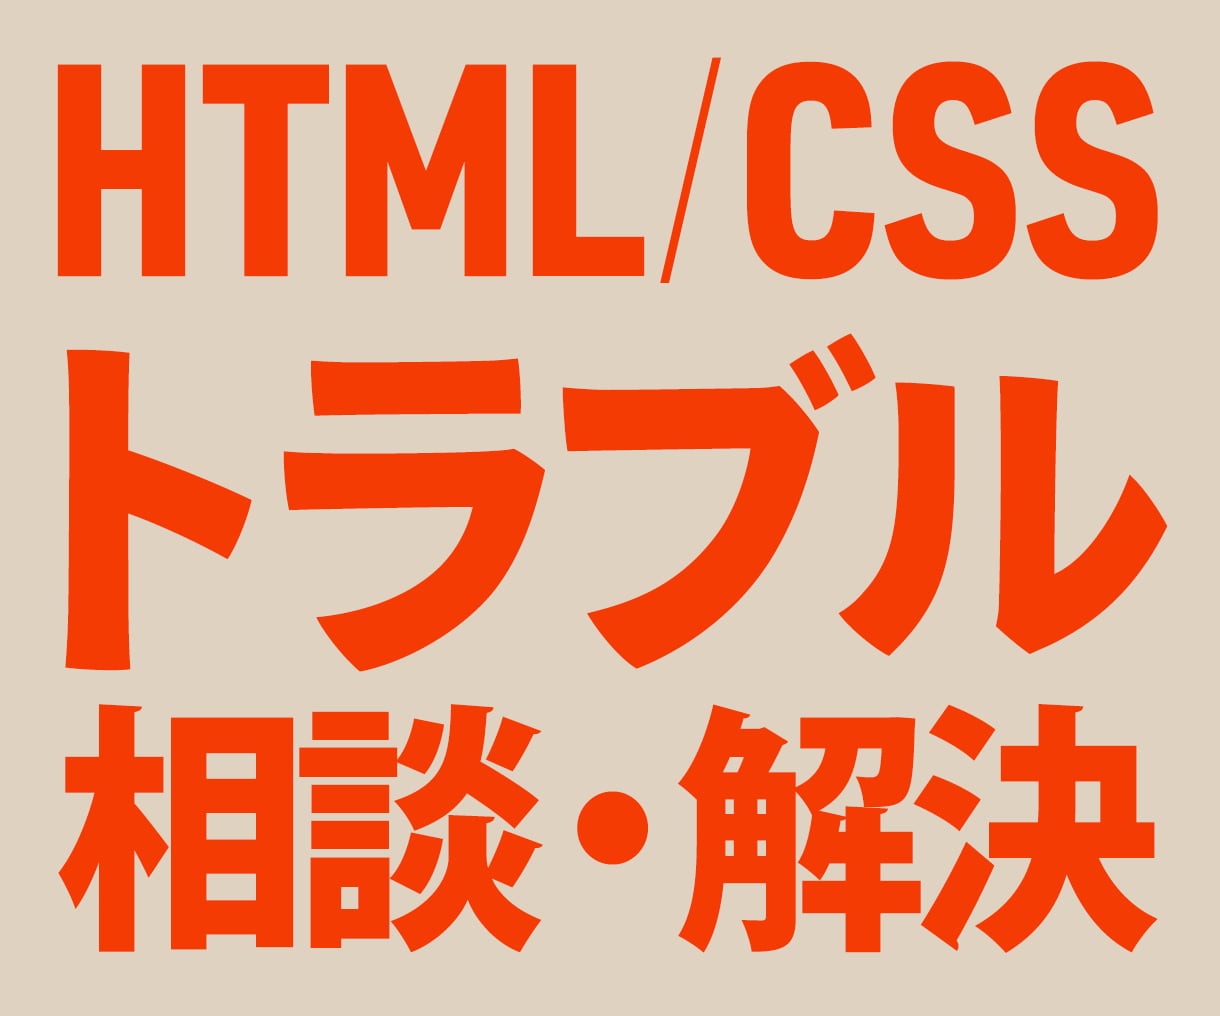 HTML／CSS／JSトラブルの相談・解決します 修正やカスタマイズもお任せください！丁寧に対応します◎ イメージ1